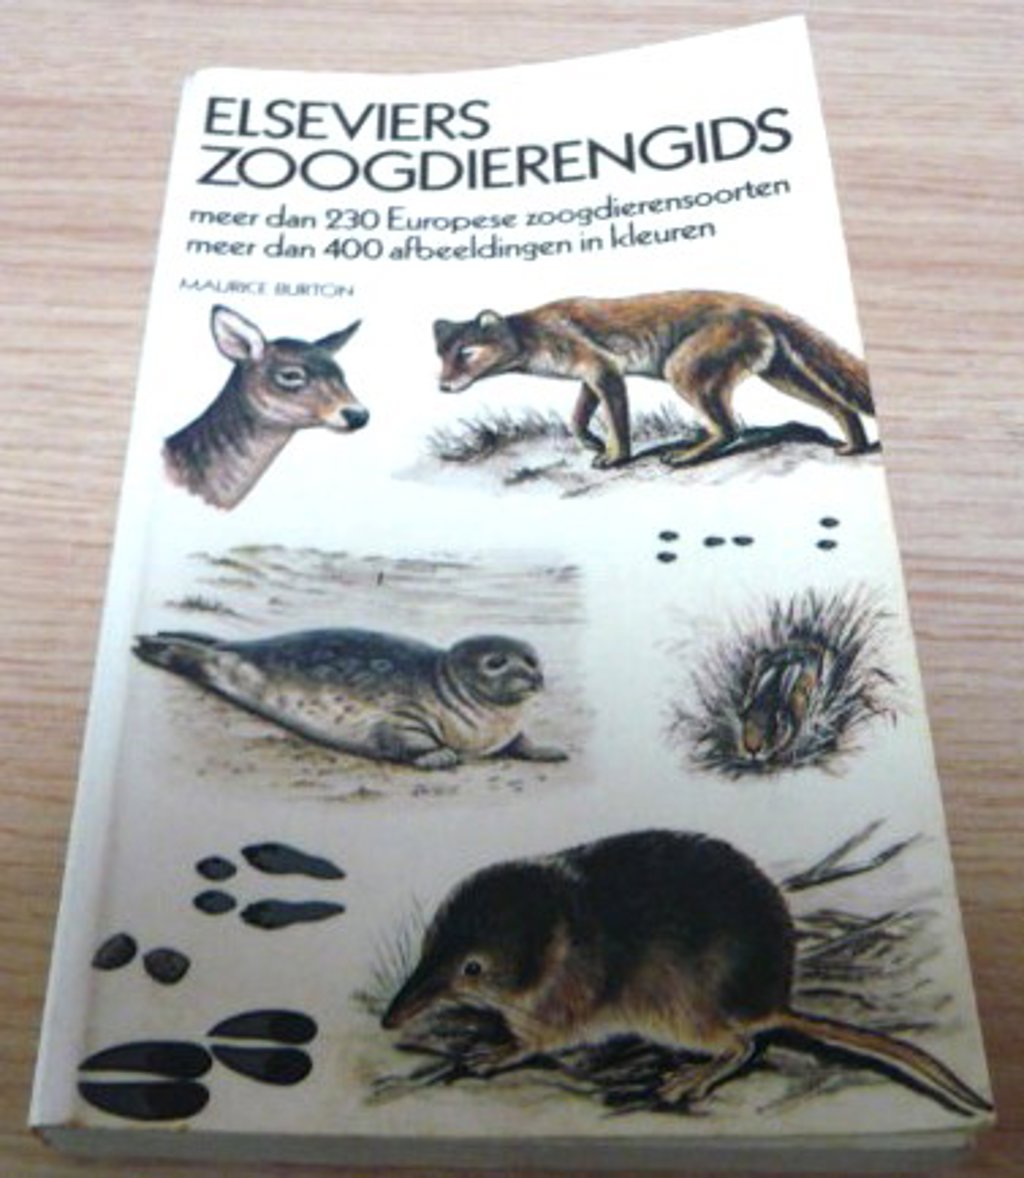 Elseviers zoogdierengids voor 6,00 euro